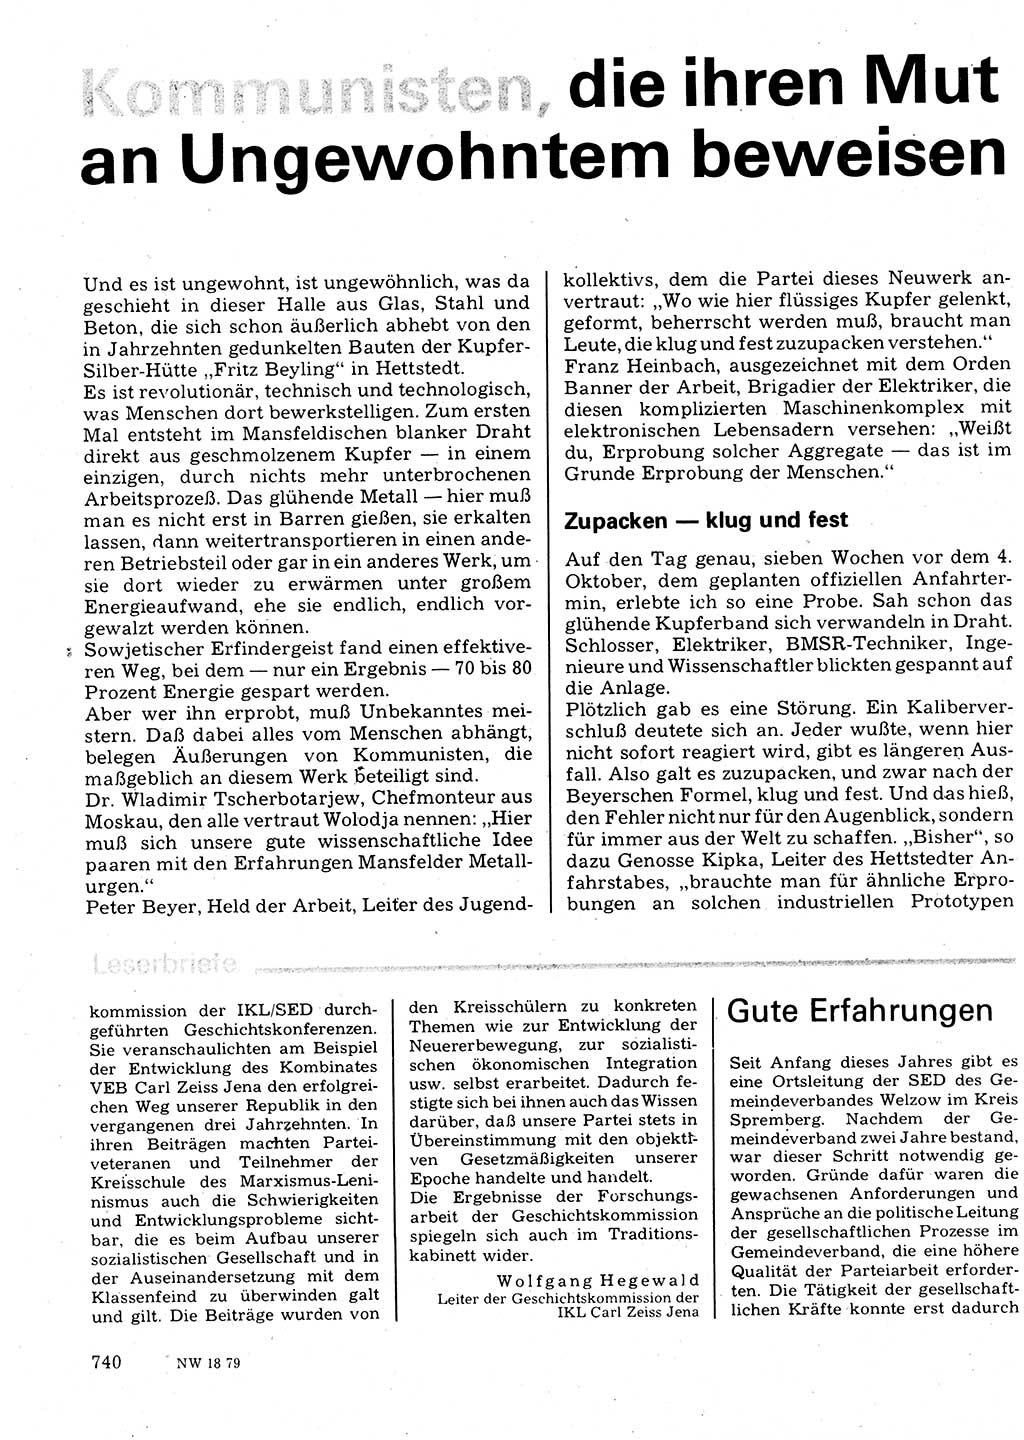 Neuer Weg (NW), Organ des Zentralkomitees (ZK) der SED (Sozialistische Einheitspartei Deutschlands) für Fragen des Parteilebens, 34. Jahrgang [Deutsche Demokratische Republik (DDR)] 1979, Seite 740 (NW ZK SED DDR 1979, S. 740)